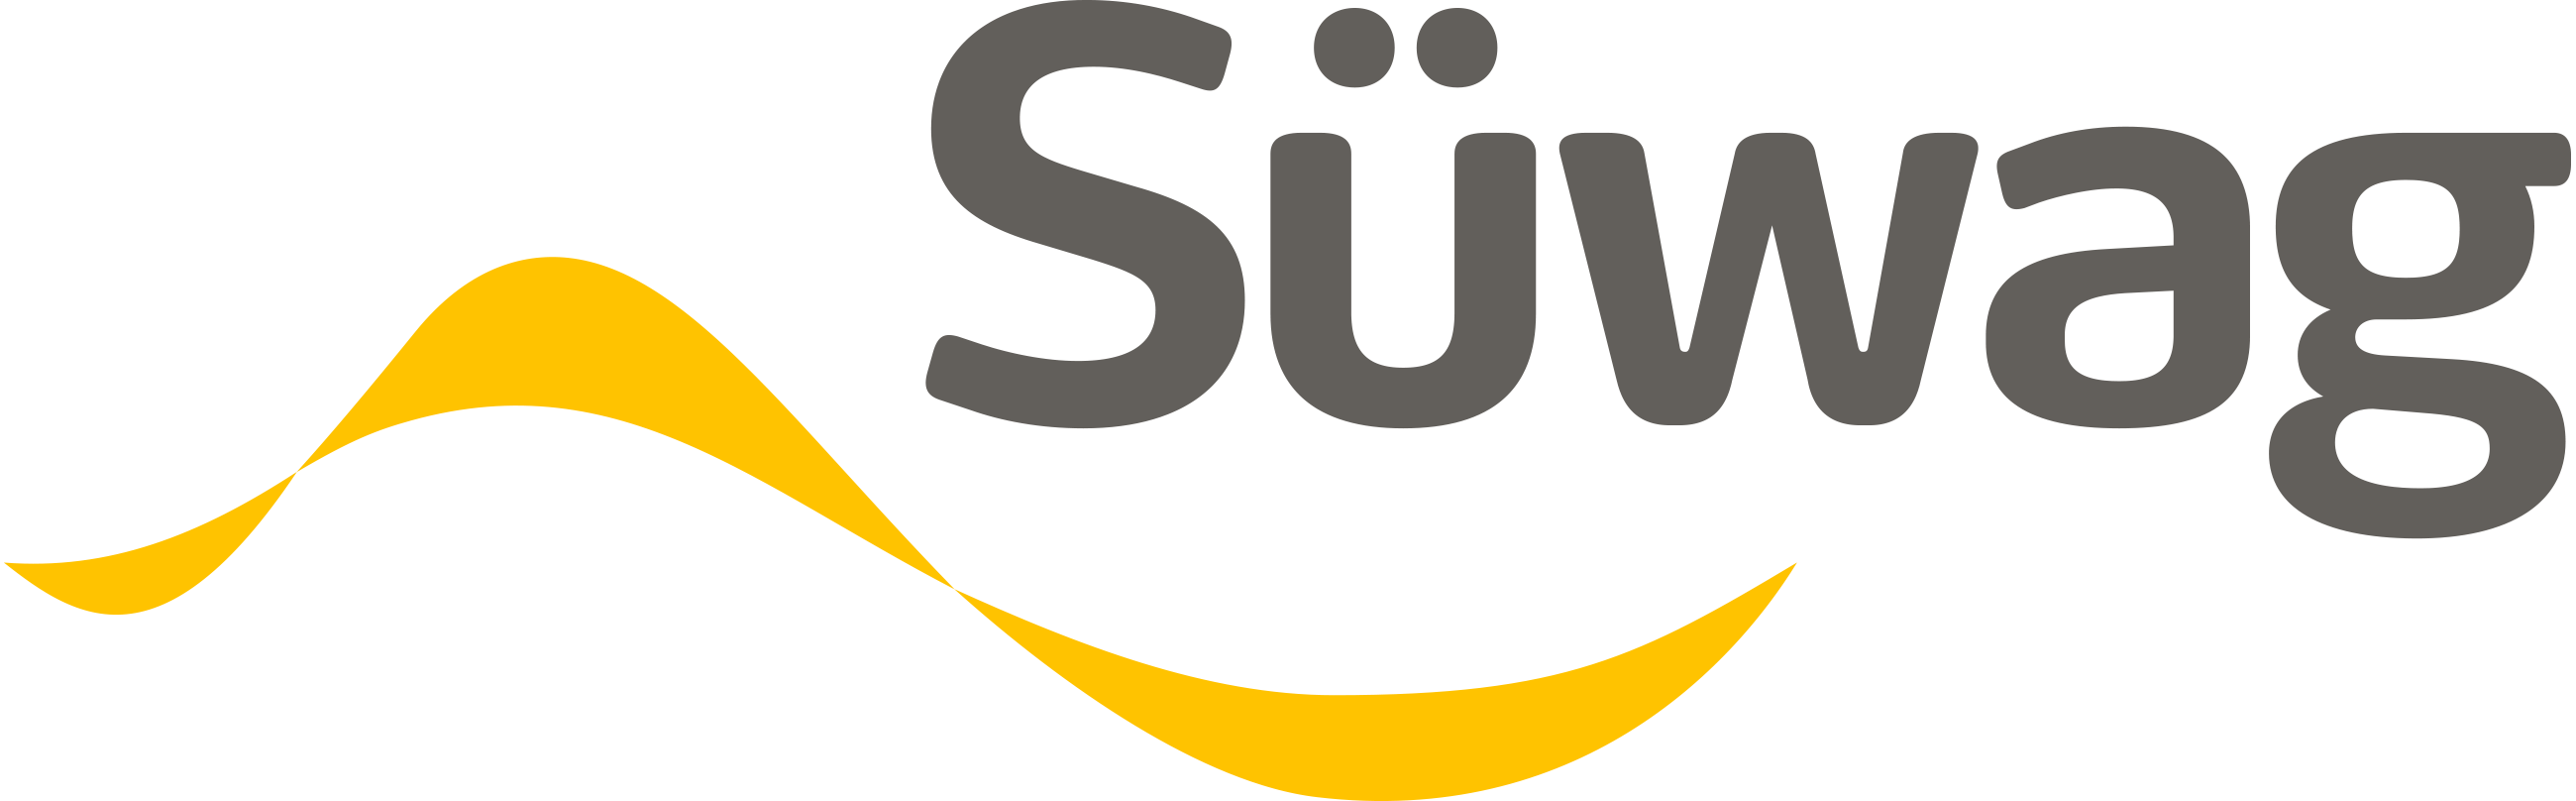 swag logo2017 p RGB grau